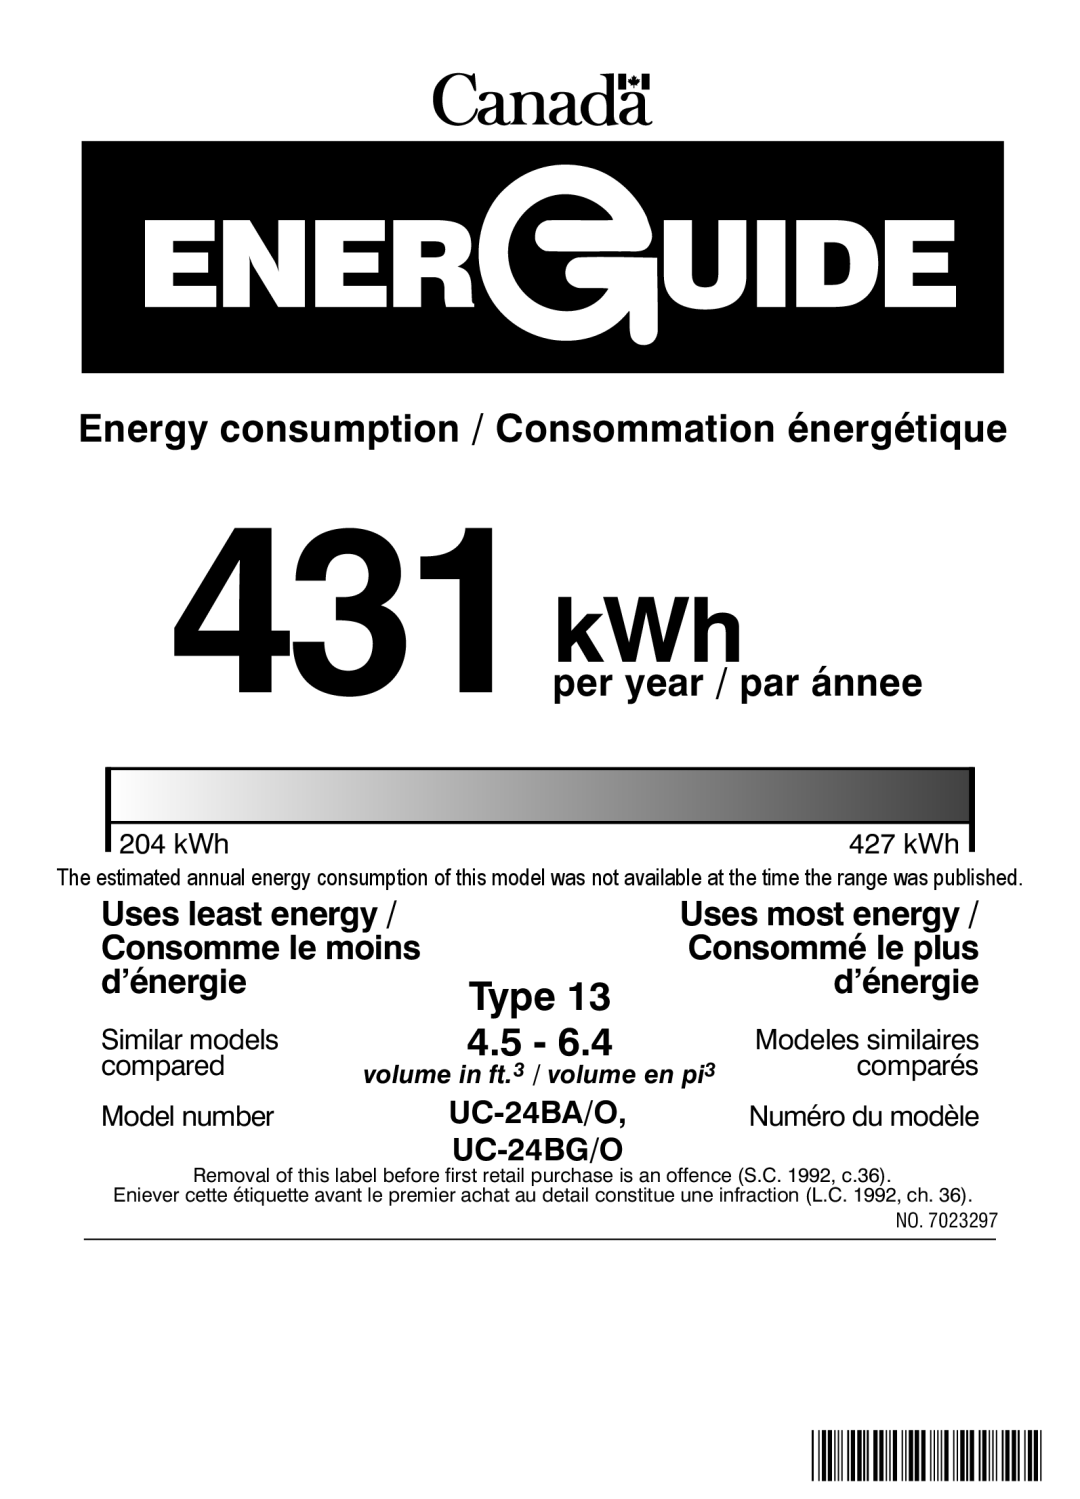 Sub-Zero UC-24BG/O manual 431kWh, 4.5, Energy consumption / Consommation énergétique, per year / par ánnee, Type, d’énergie 